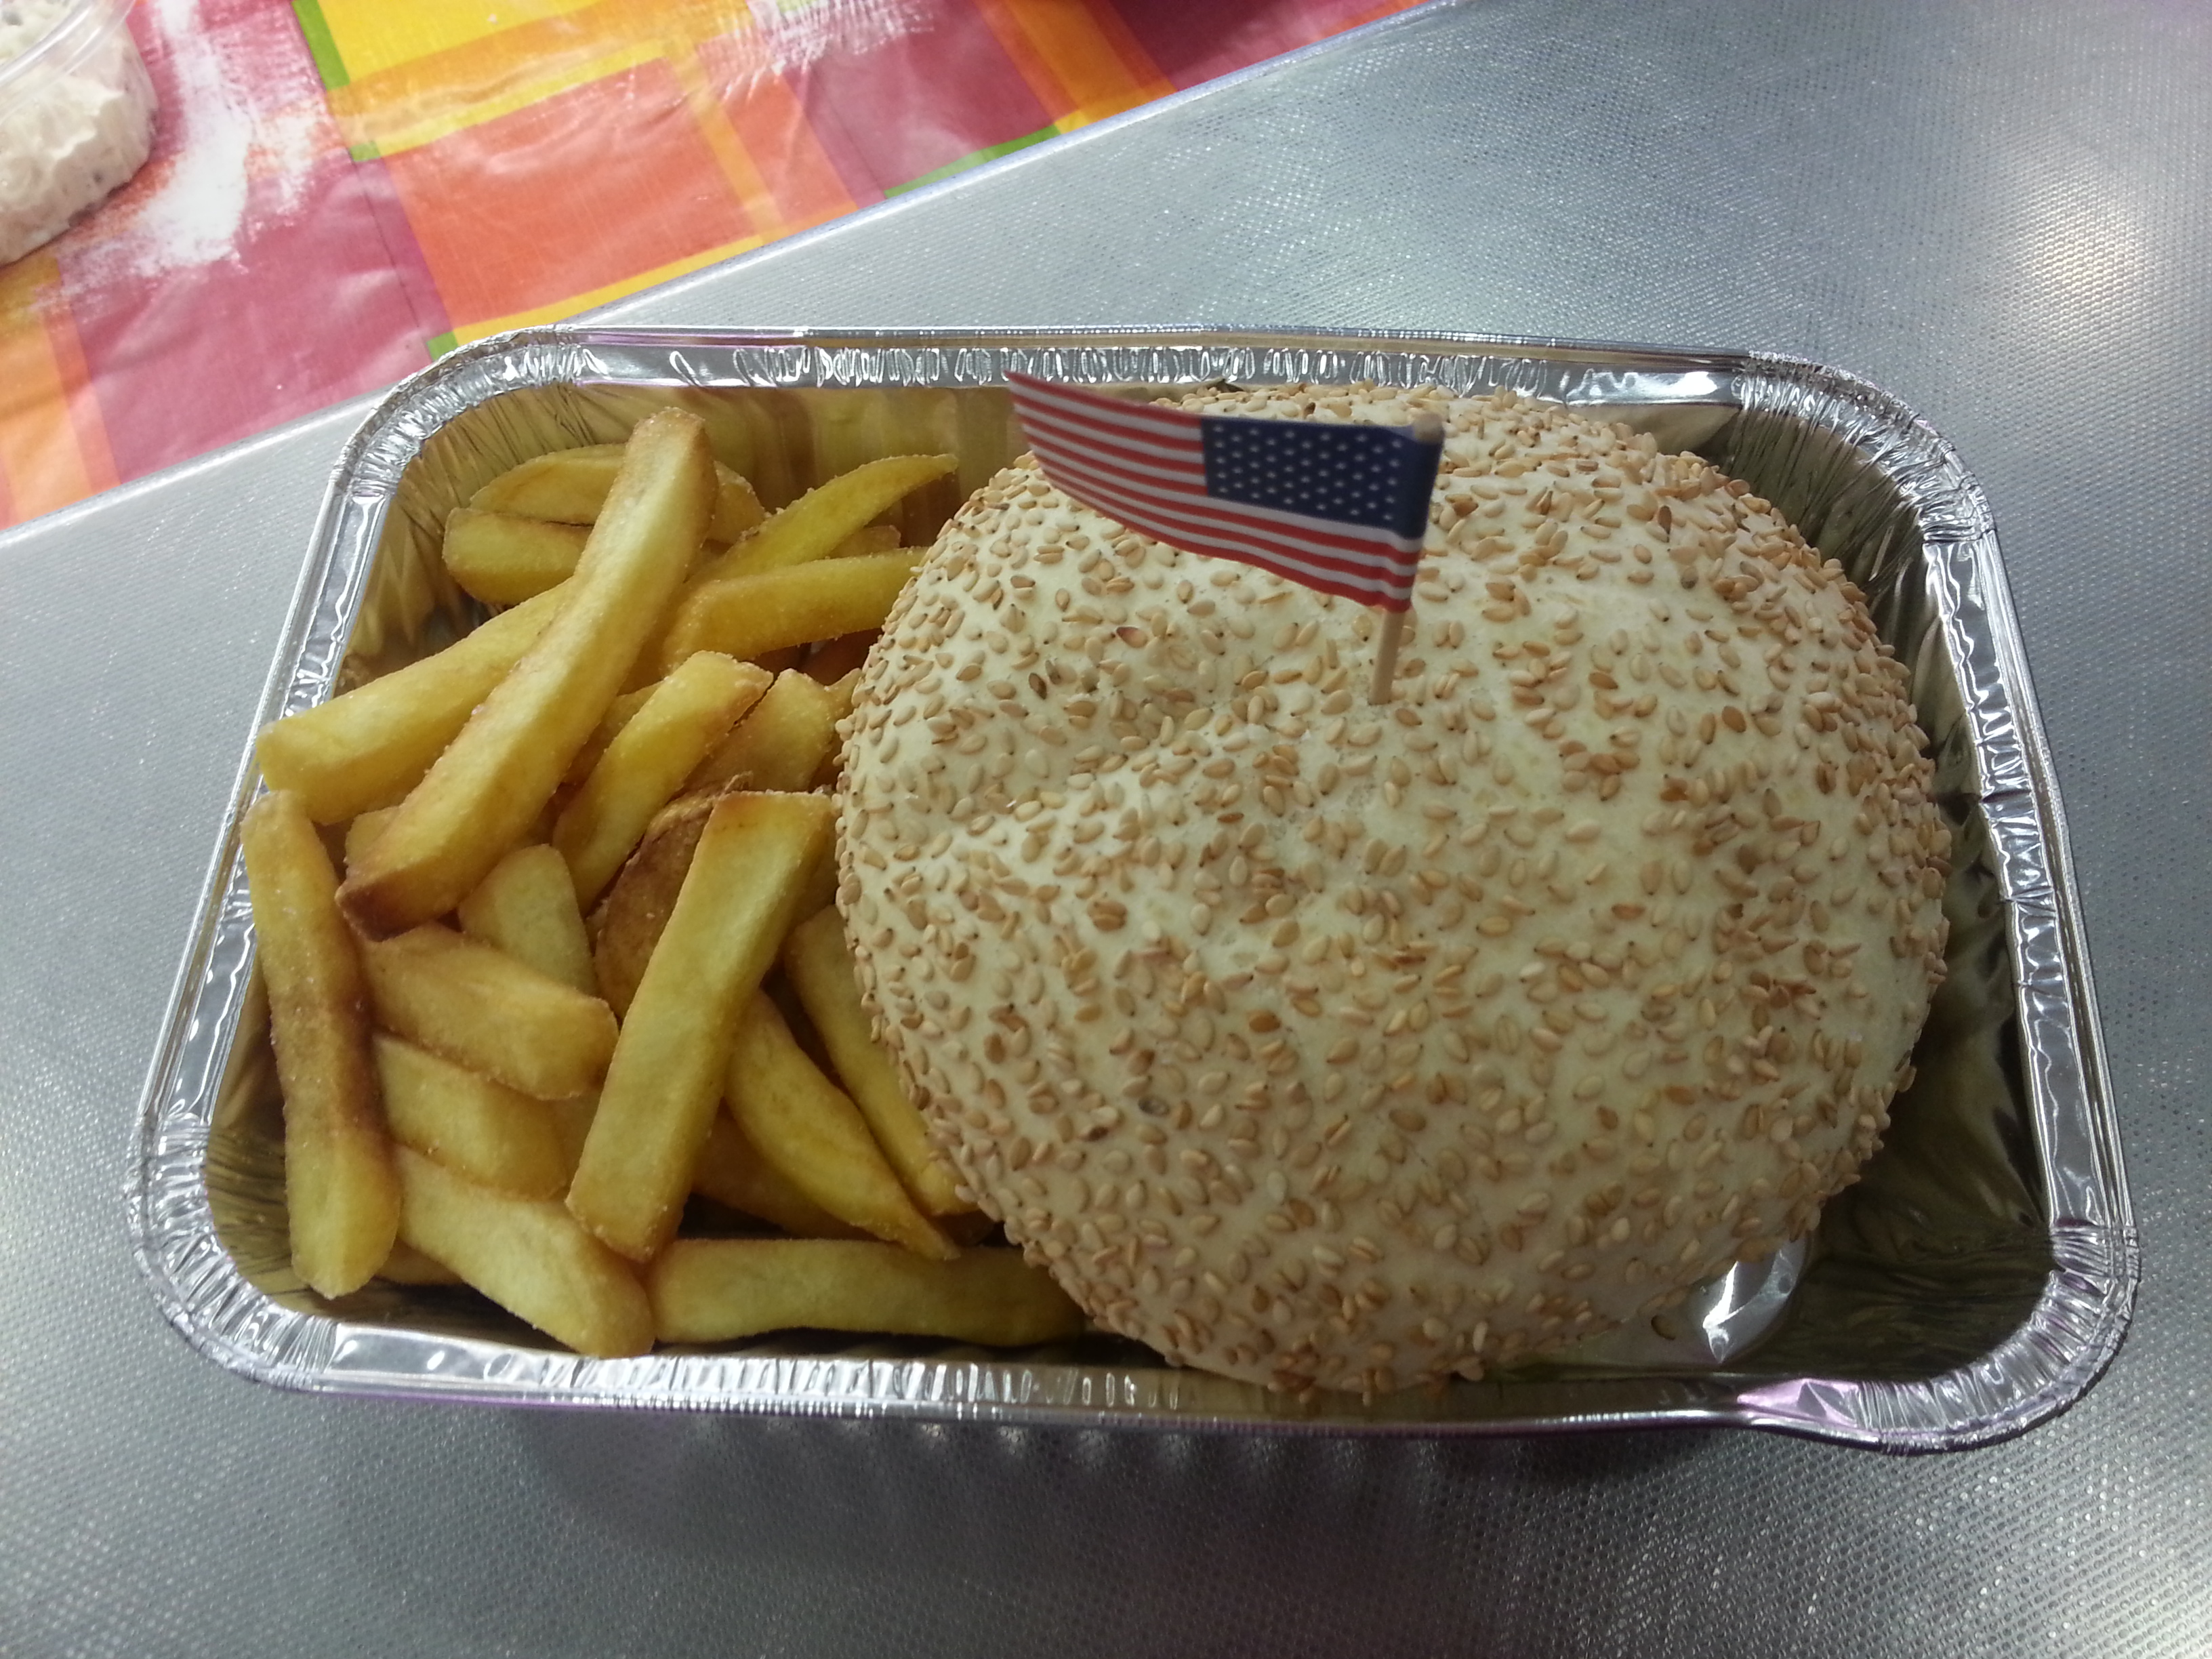 Hamburger & chips (USA)